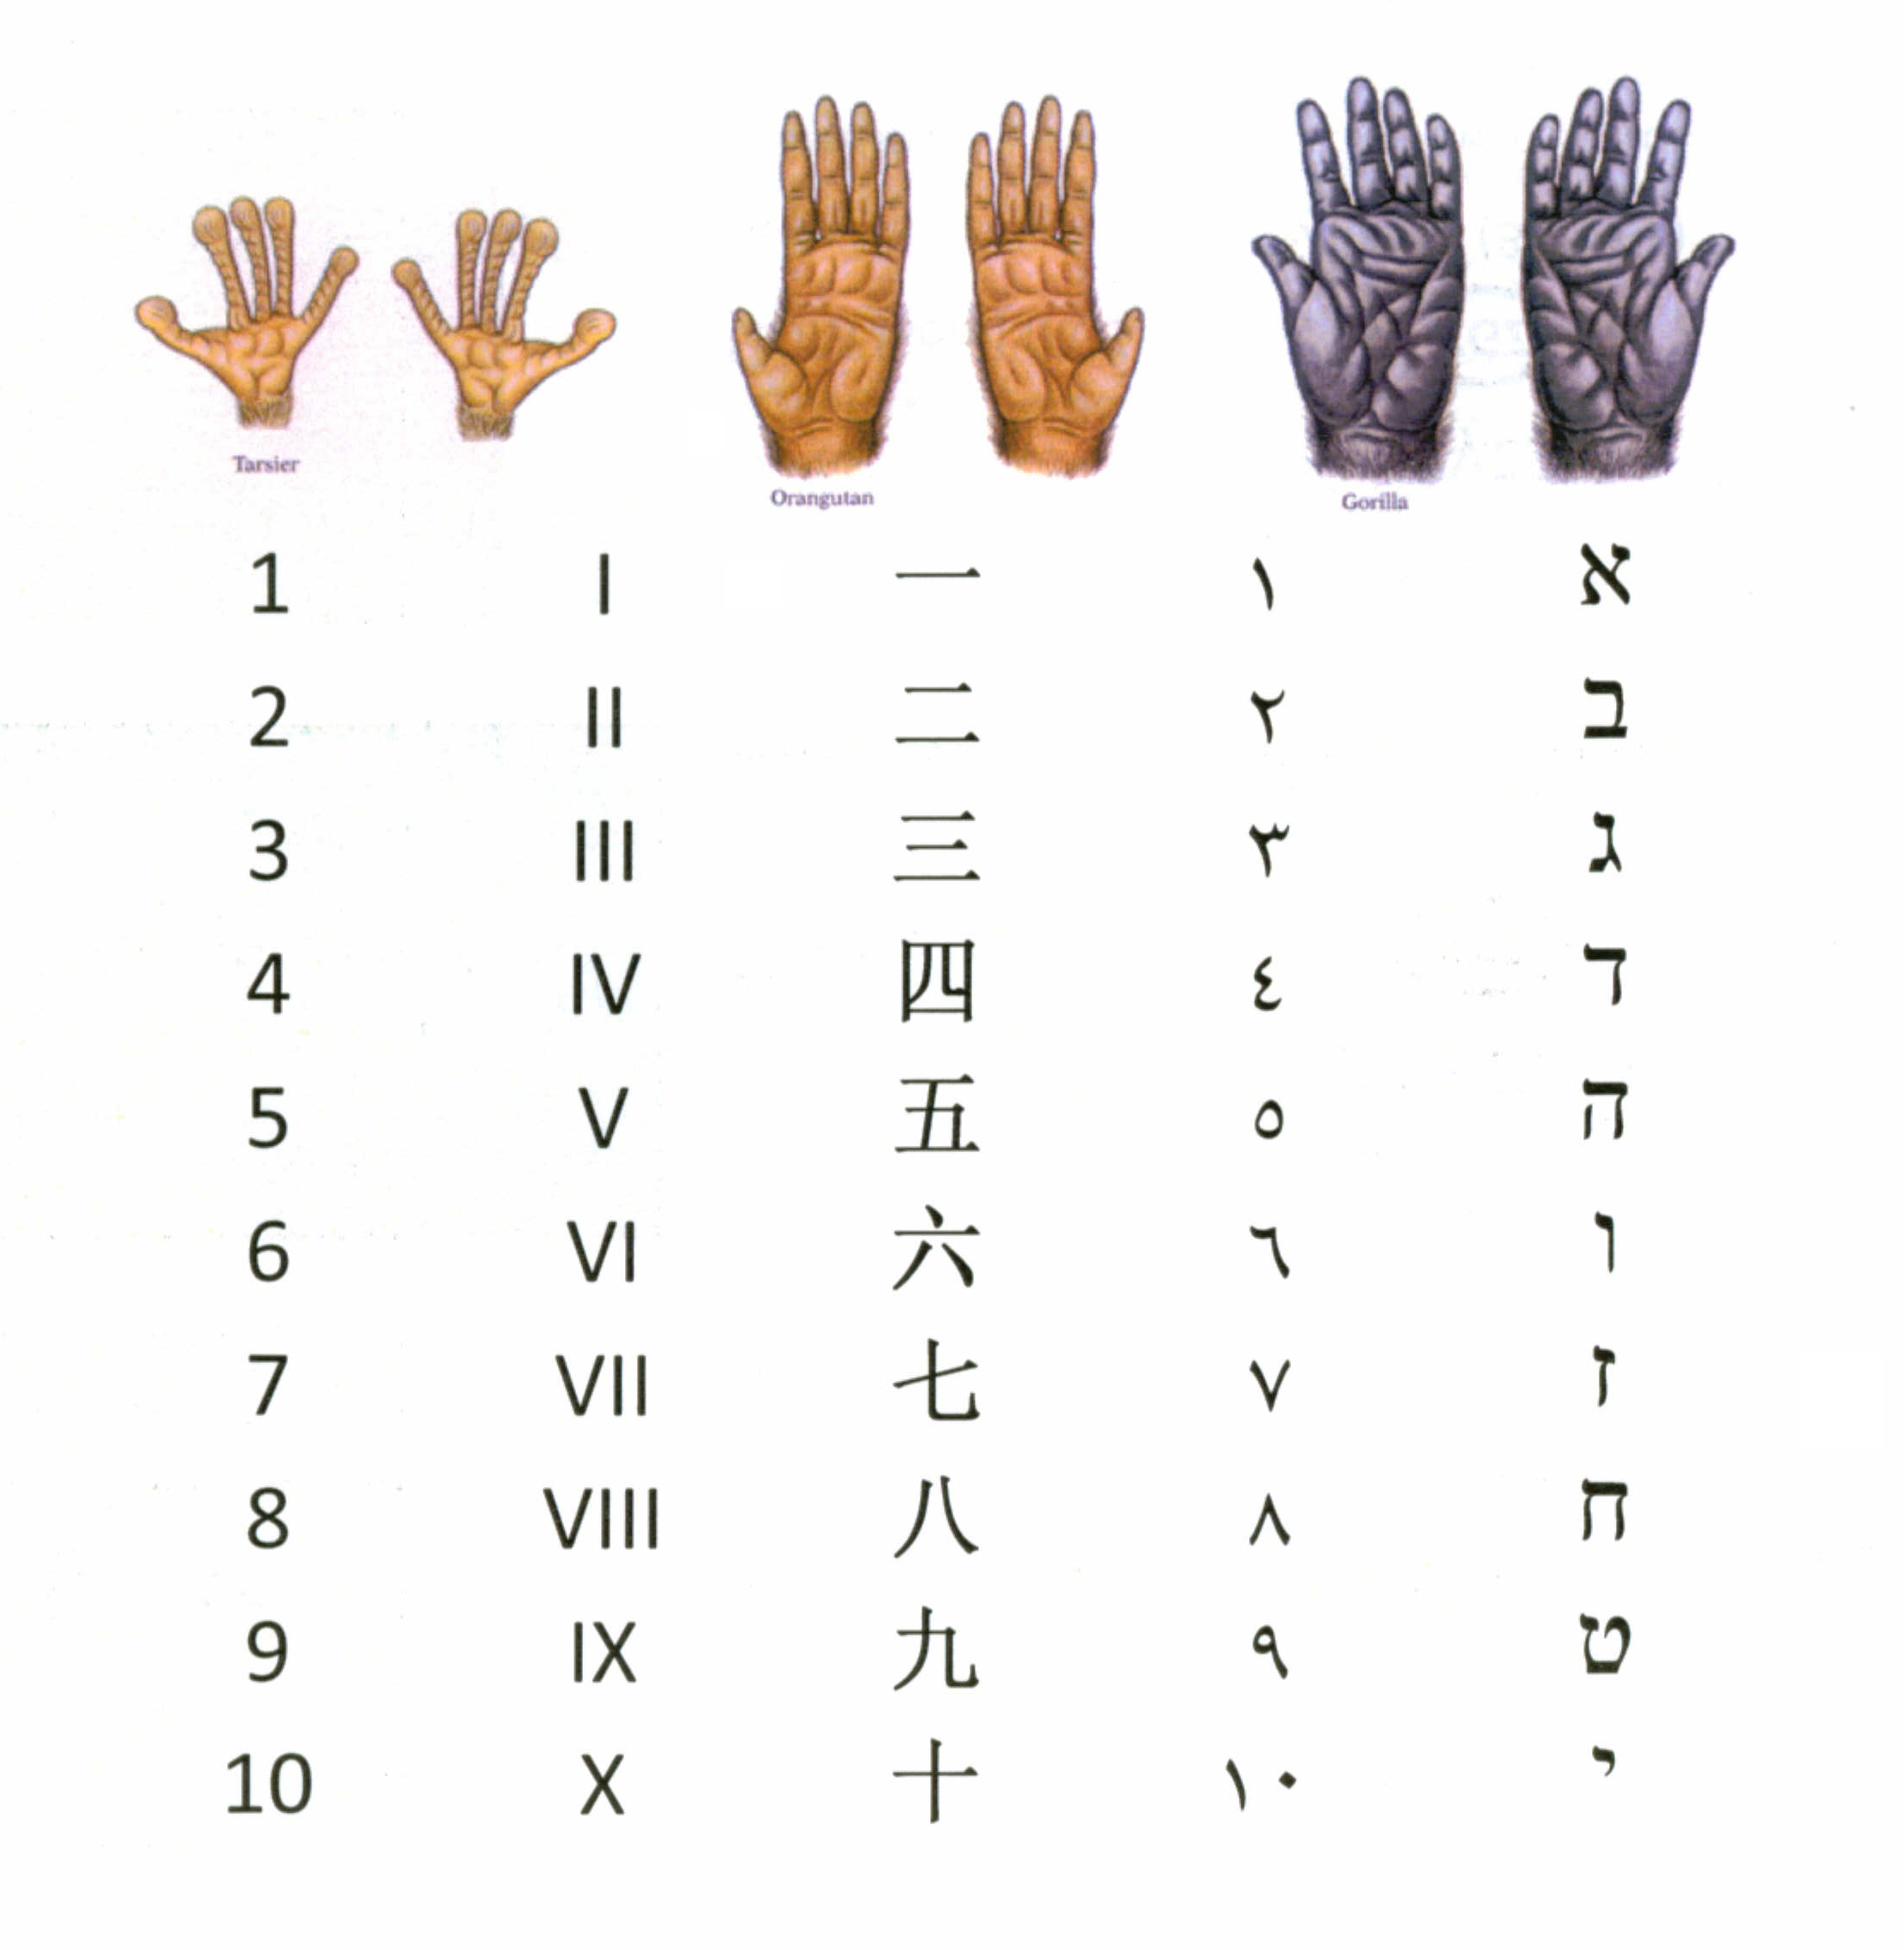 Primate Hands Ten Count